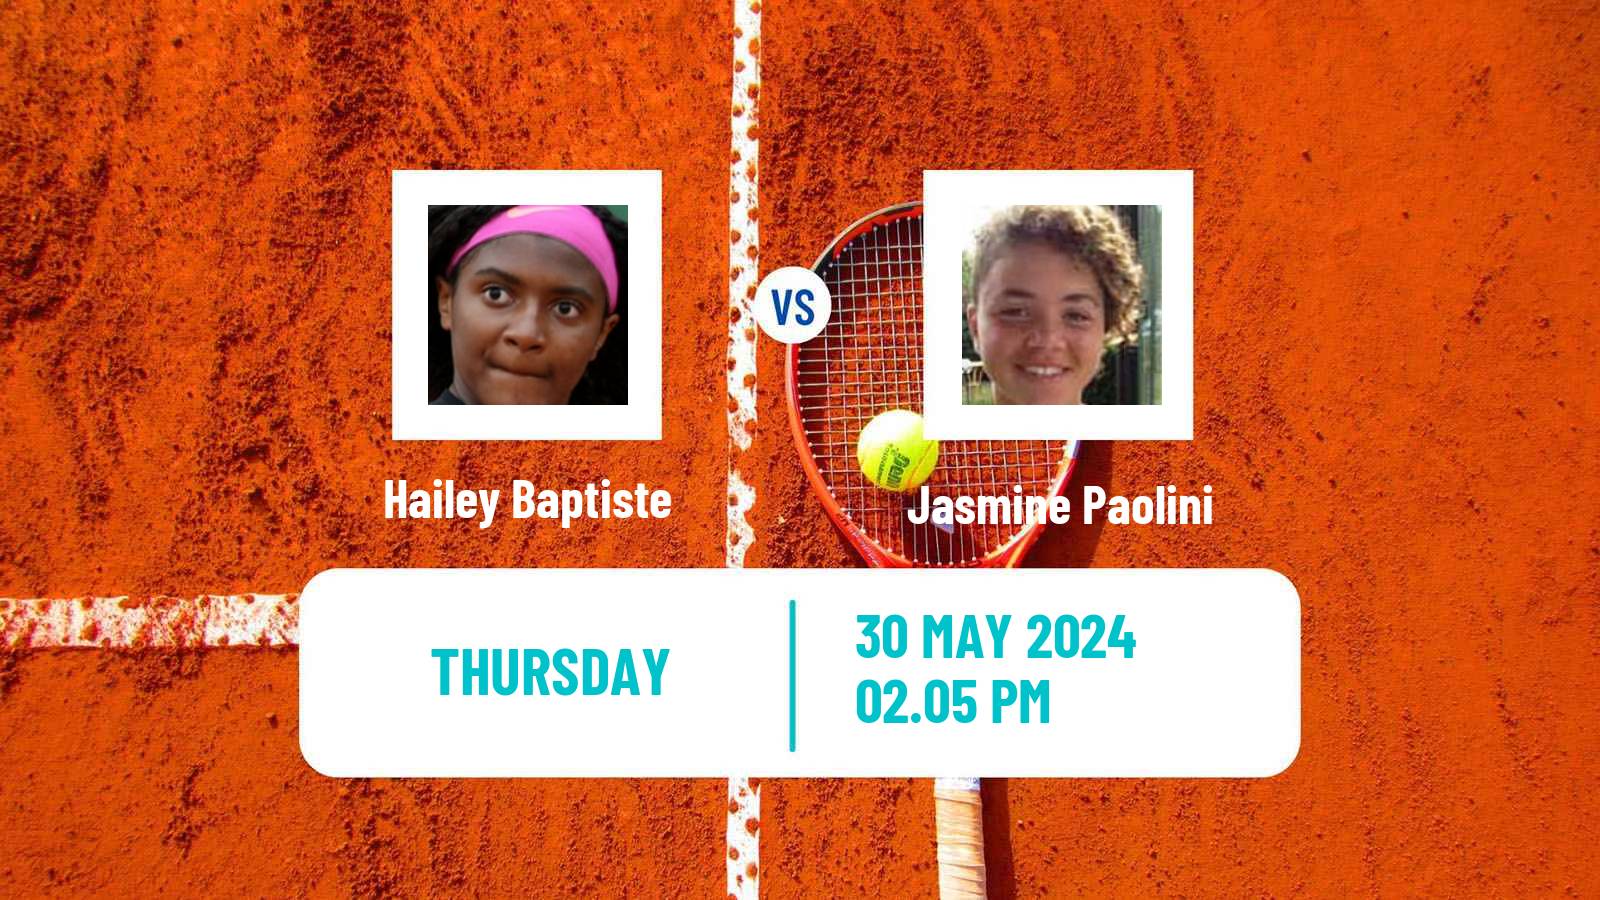 Tennis WTA Roland Garros Hailey Baptiste - Jasmine Paolini